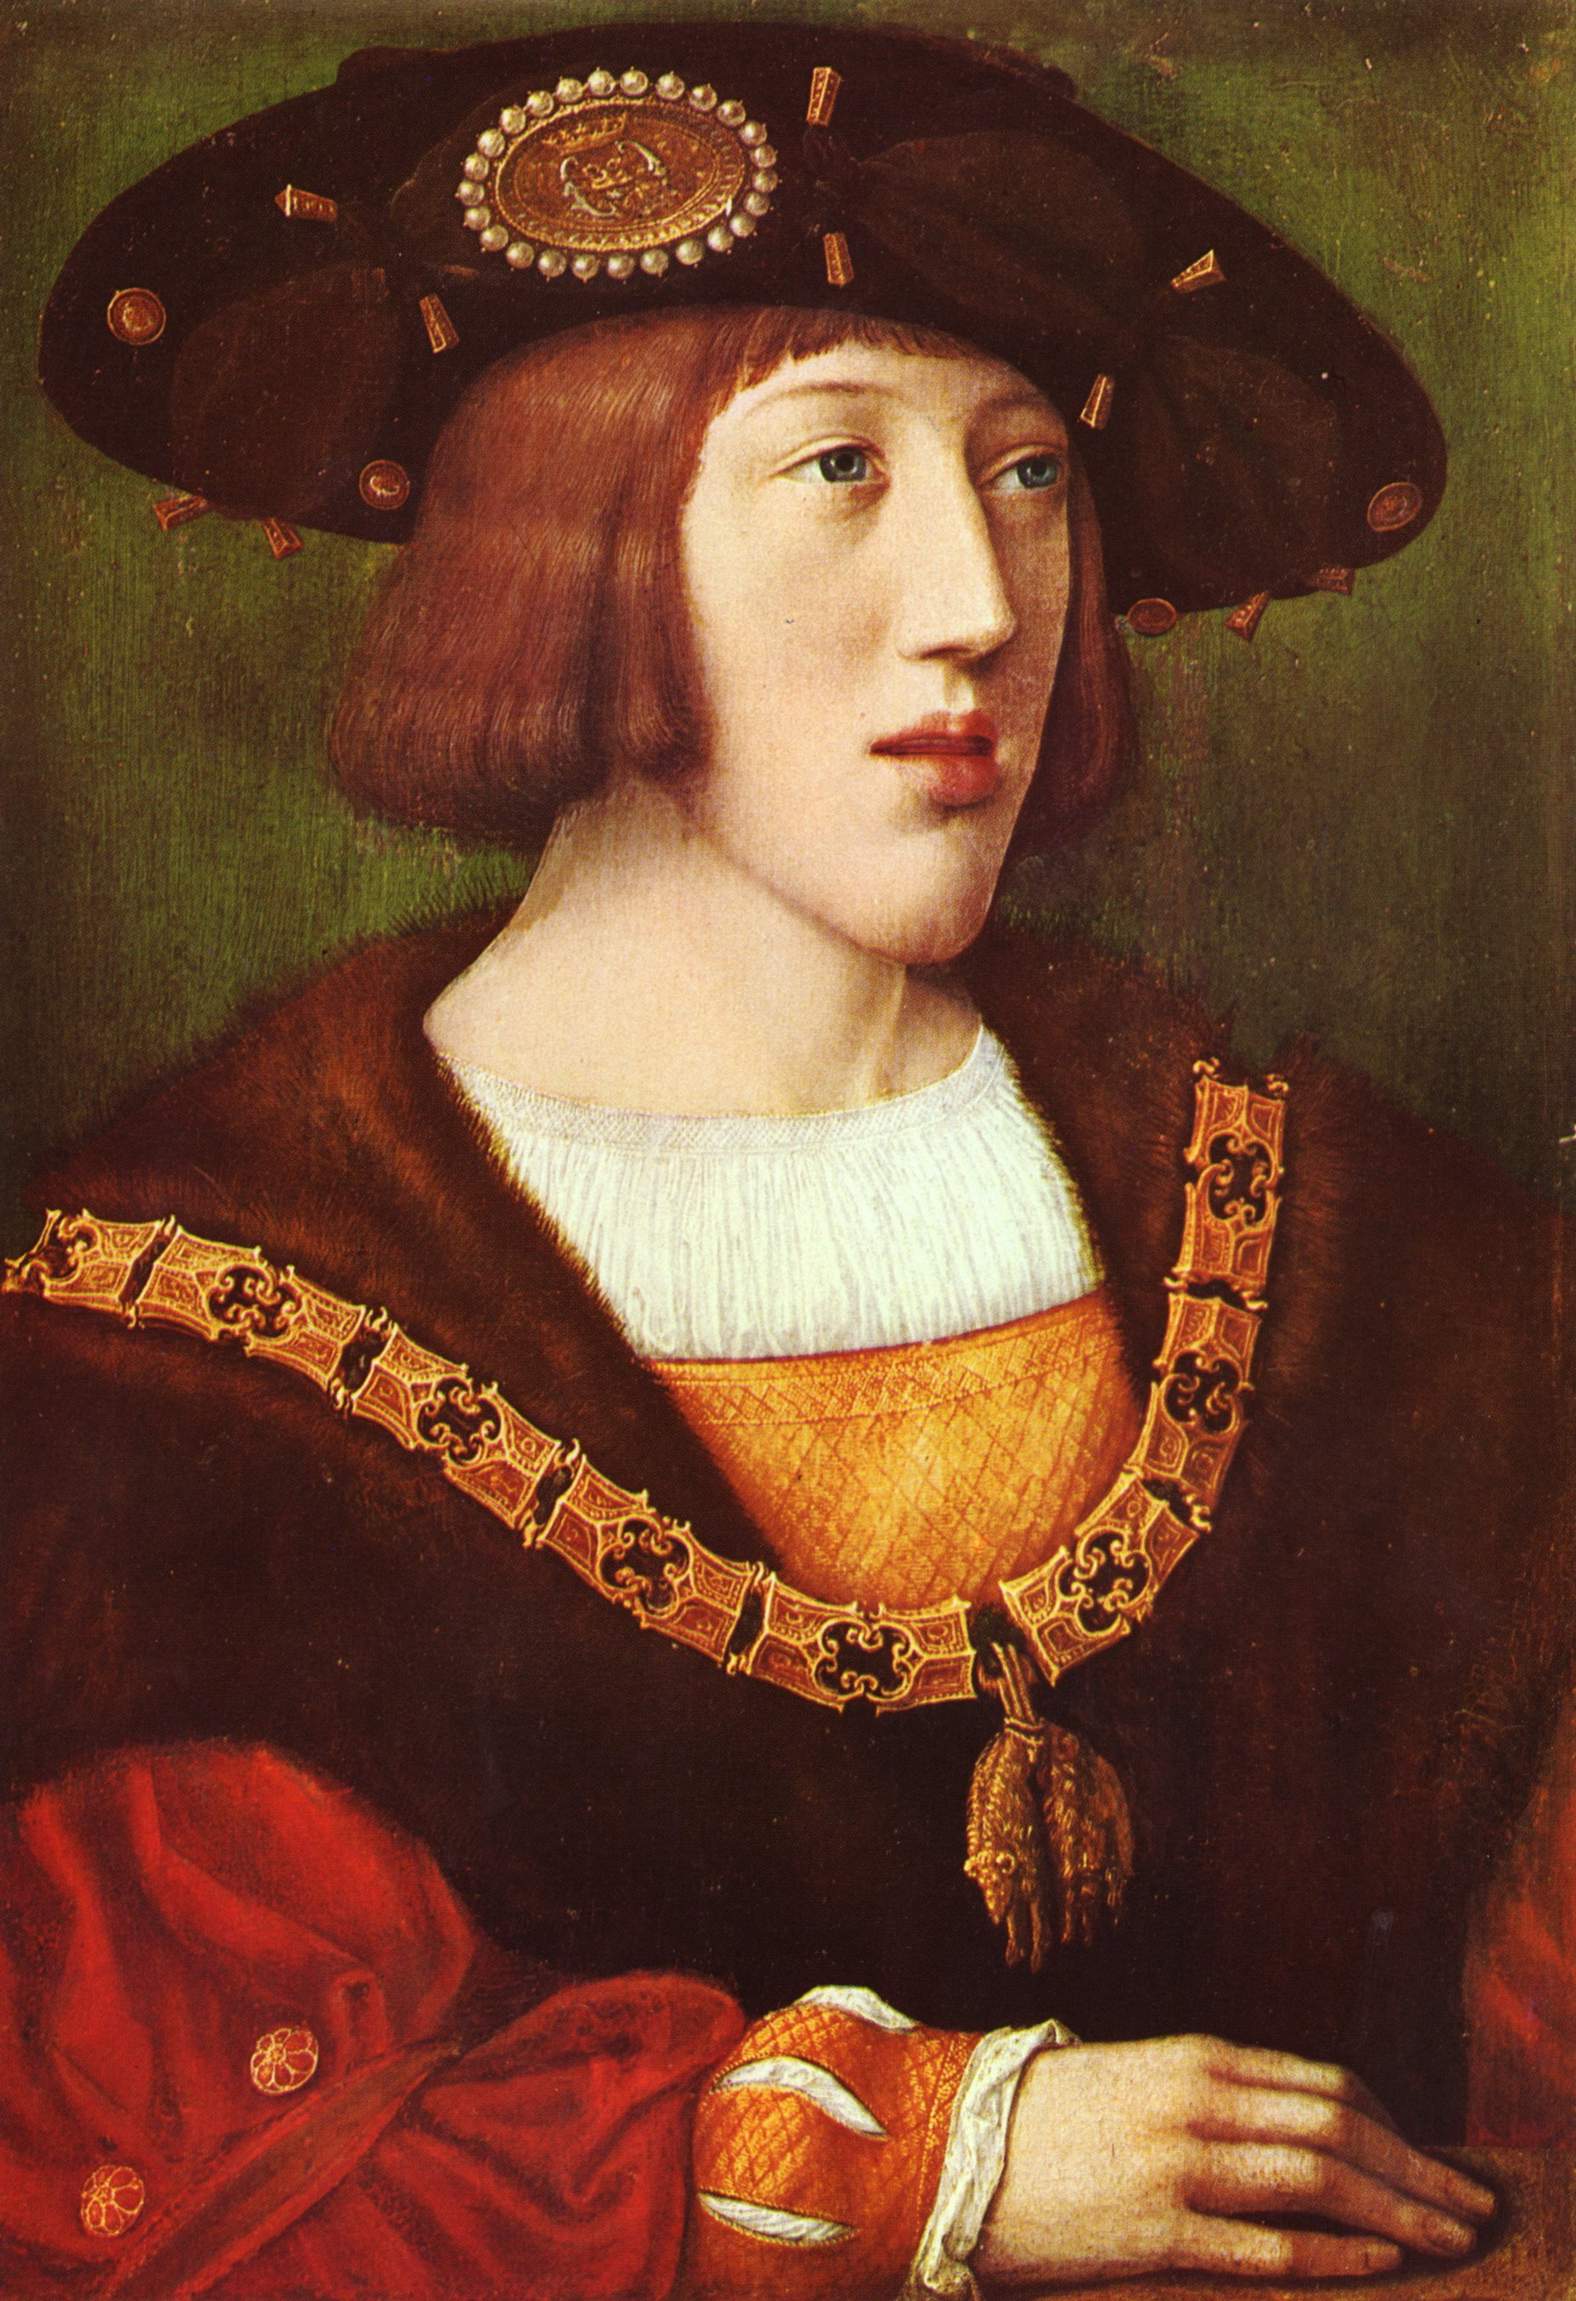 Retrat de Carles V fet per Bernard van Orley